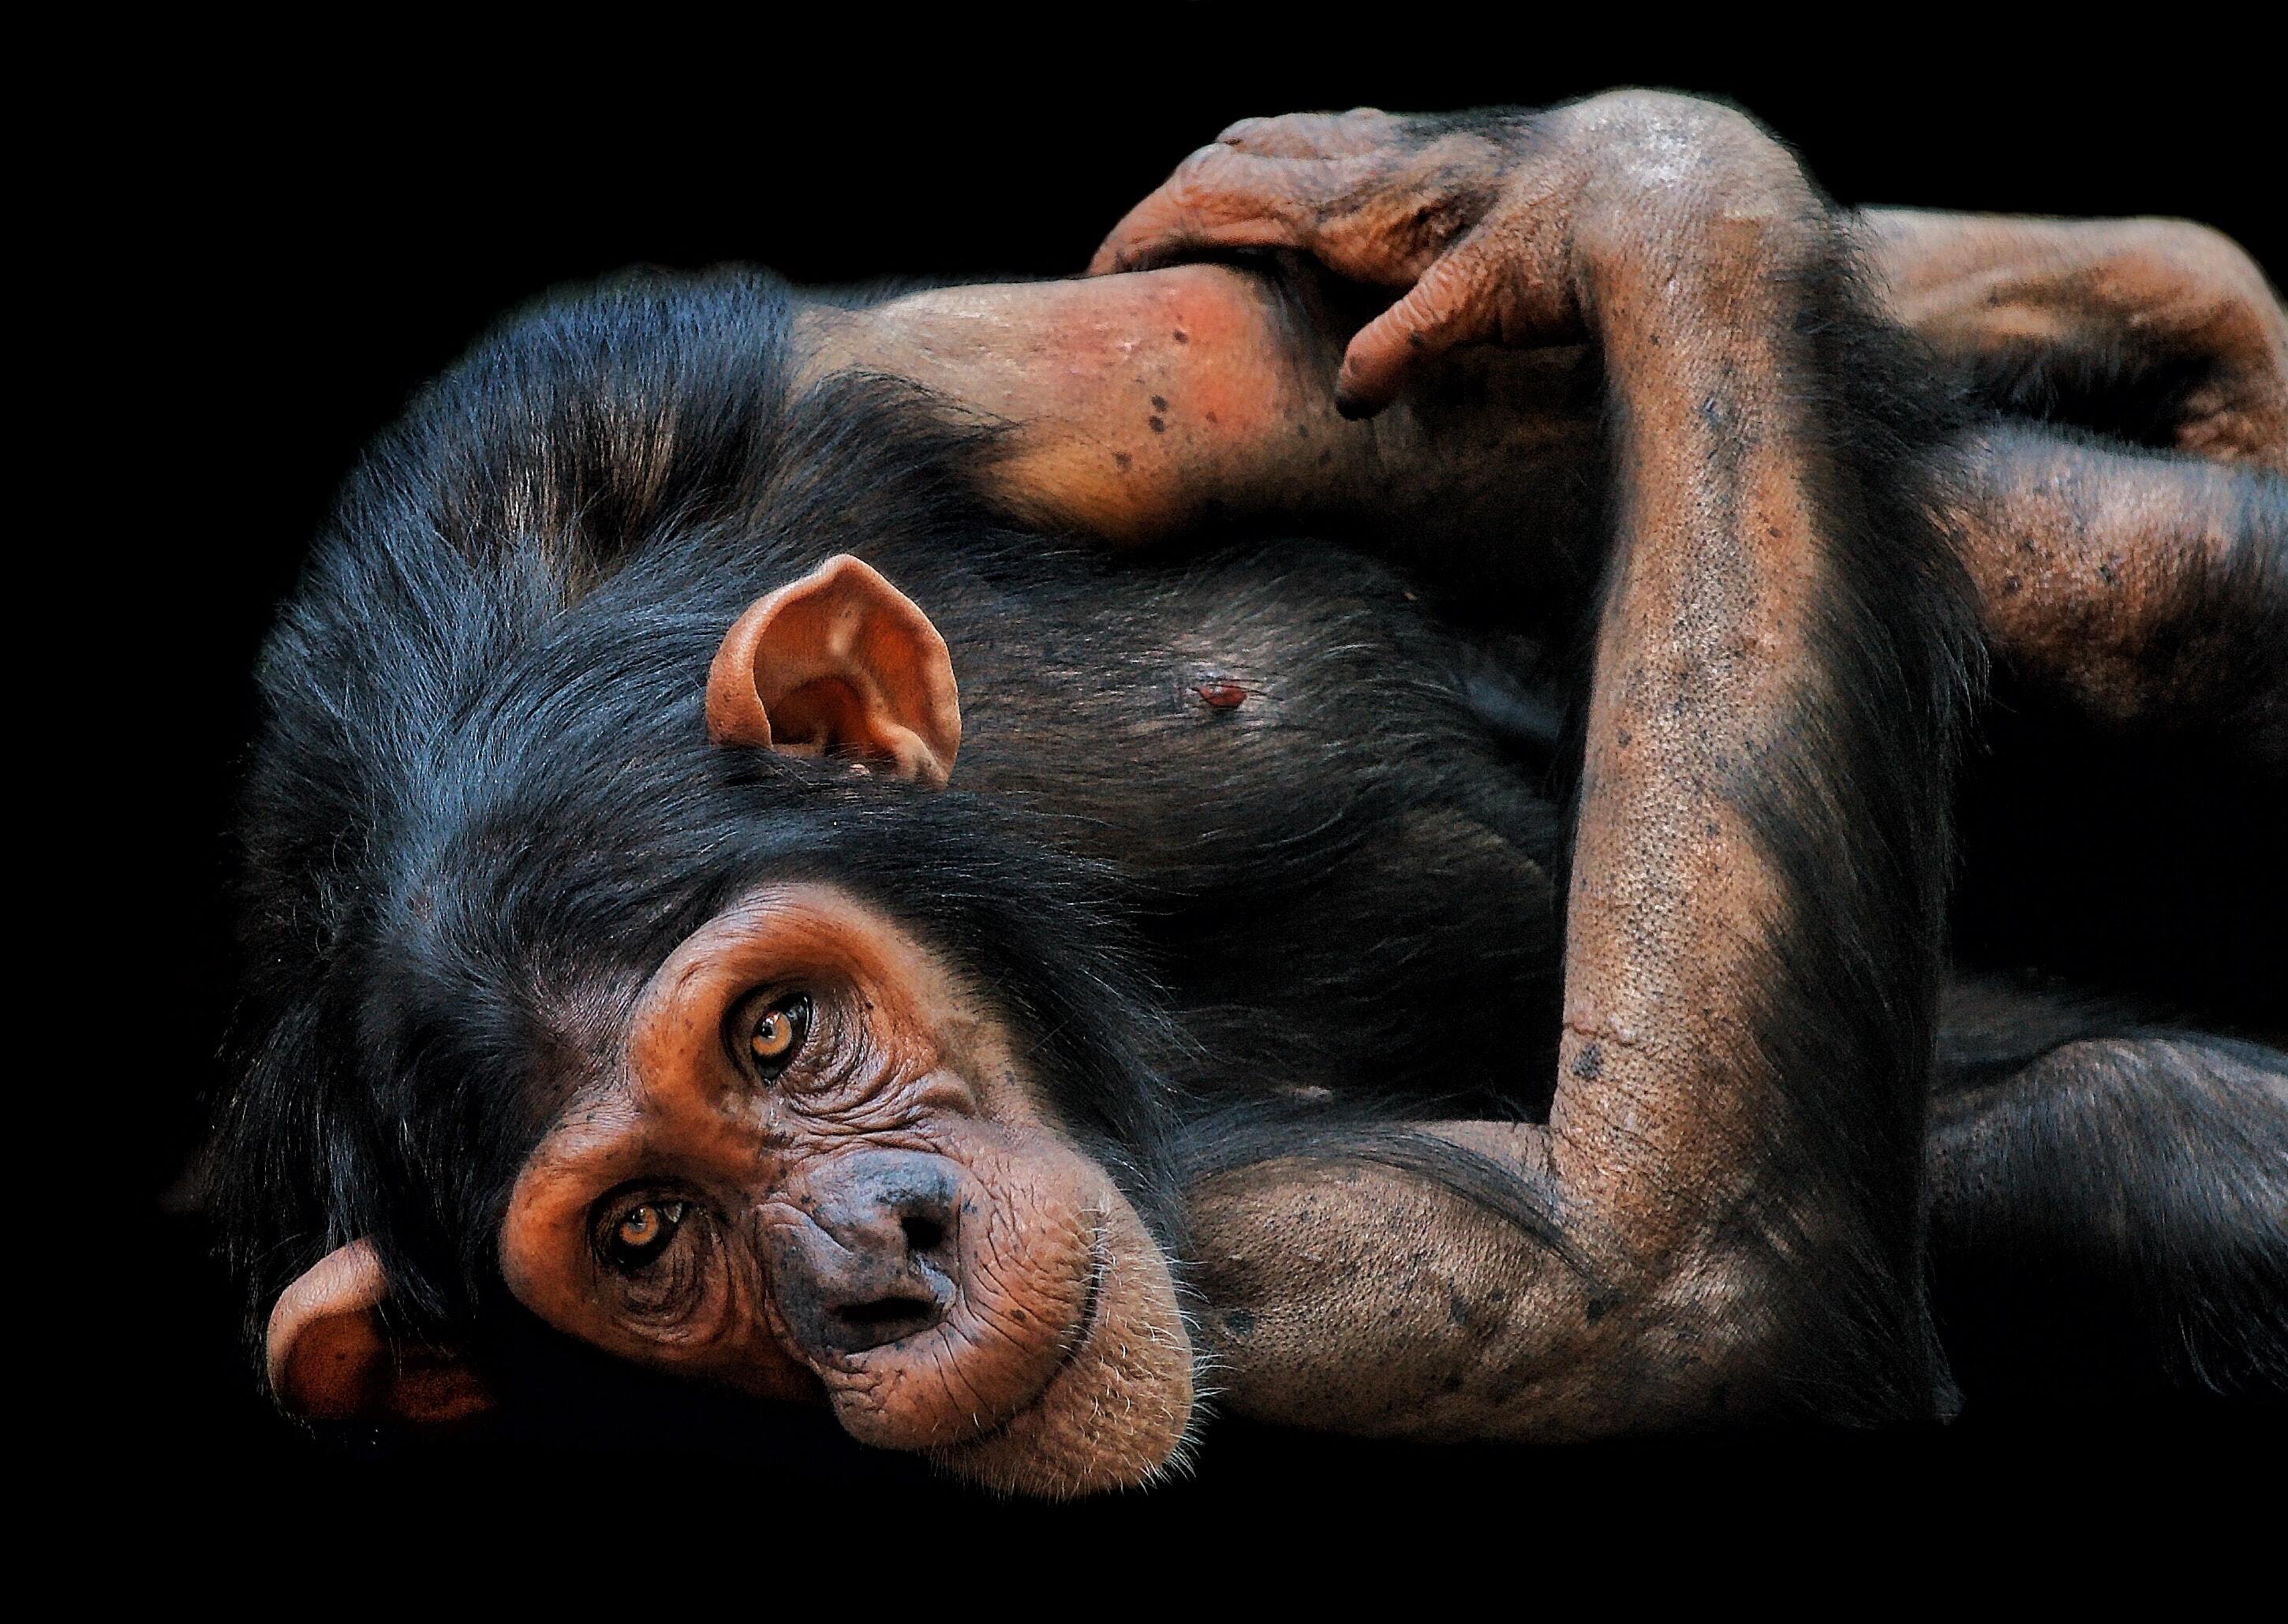 Учёные обнаружили сходство в сексуальном поведении между людьми и шимпанзе